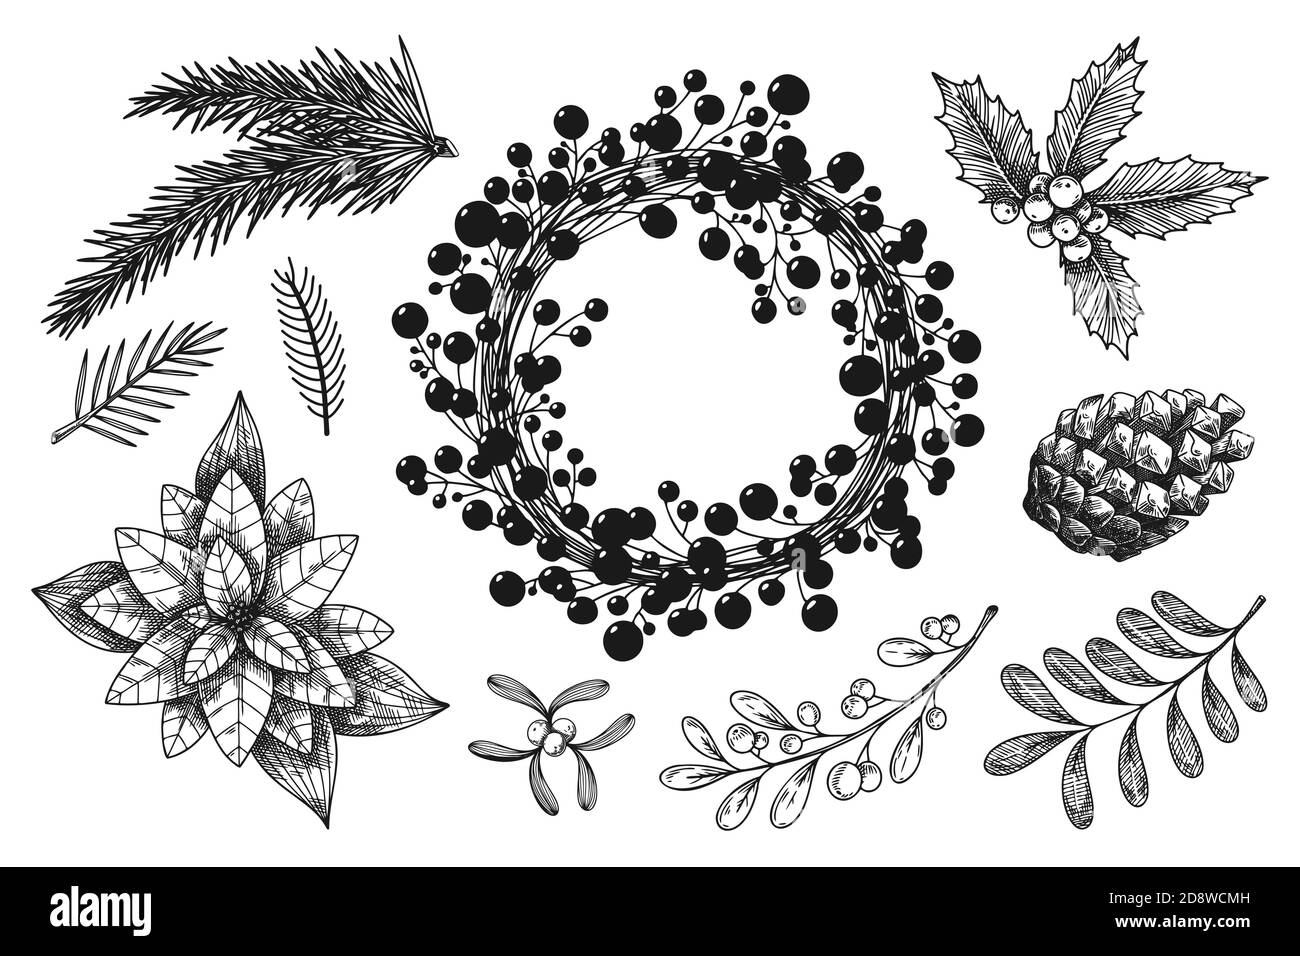 Corona di Natale e rami di diverse piante isolate su sfondo bianco. Schizzo, illustrazione disegnata a mano Illustrazione Vettoriale